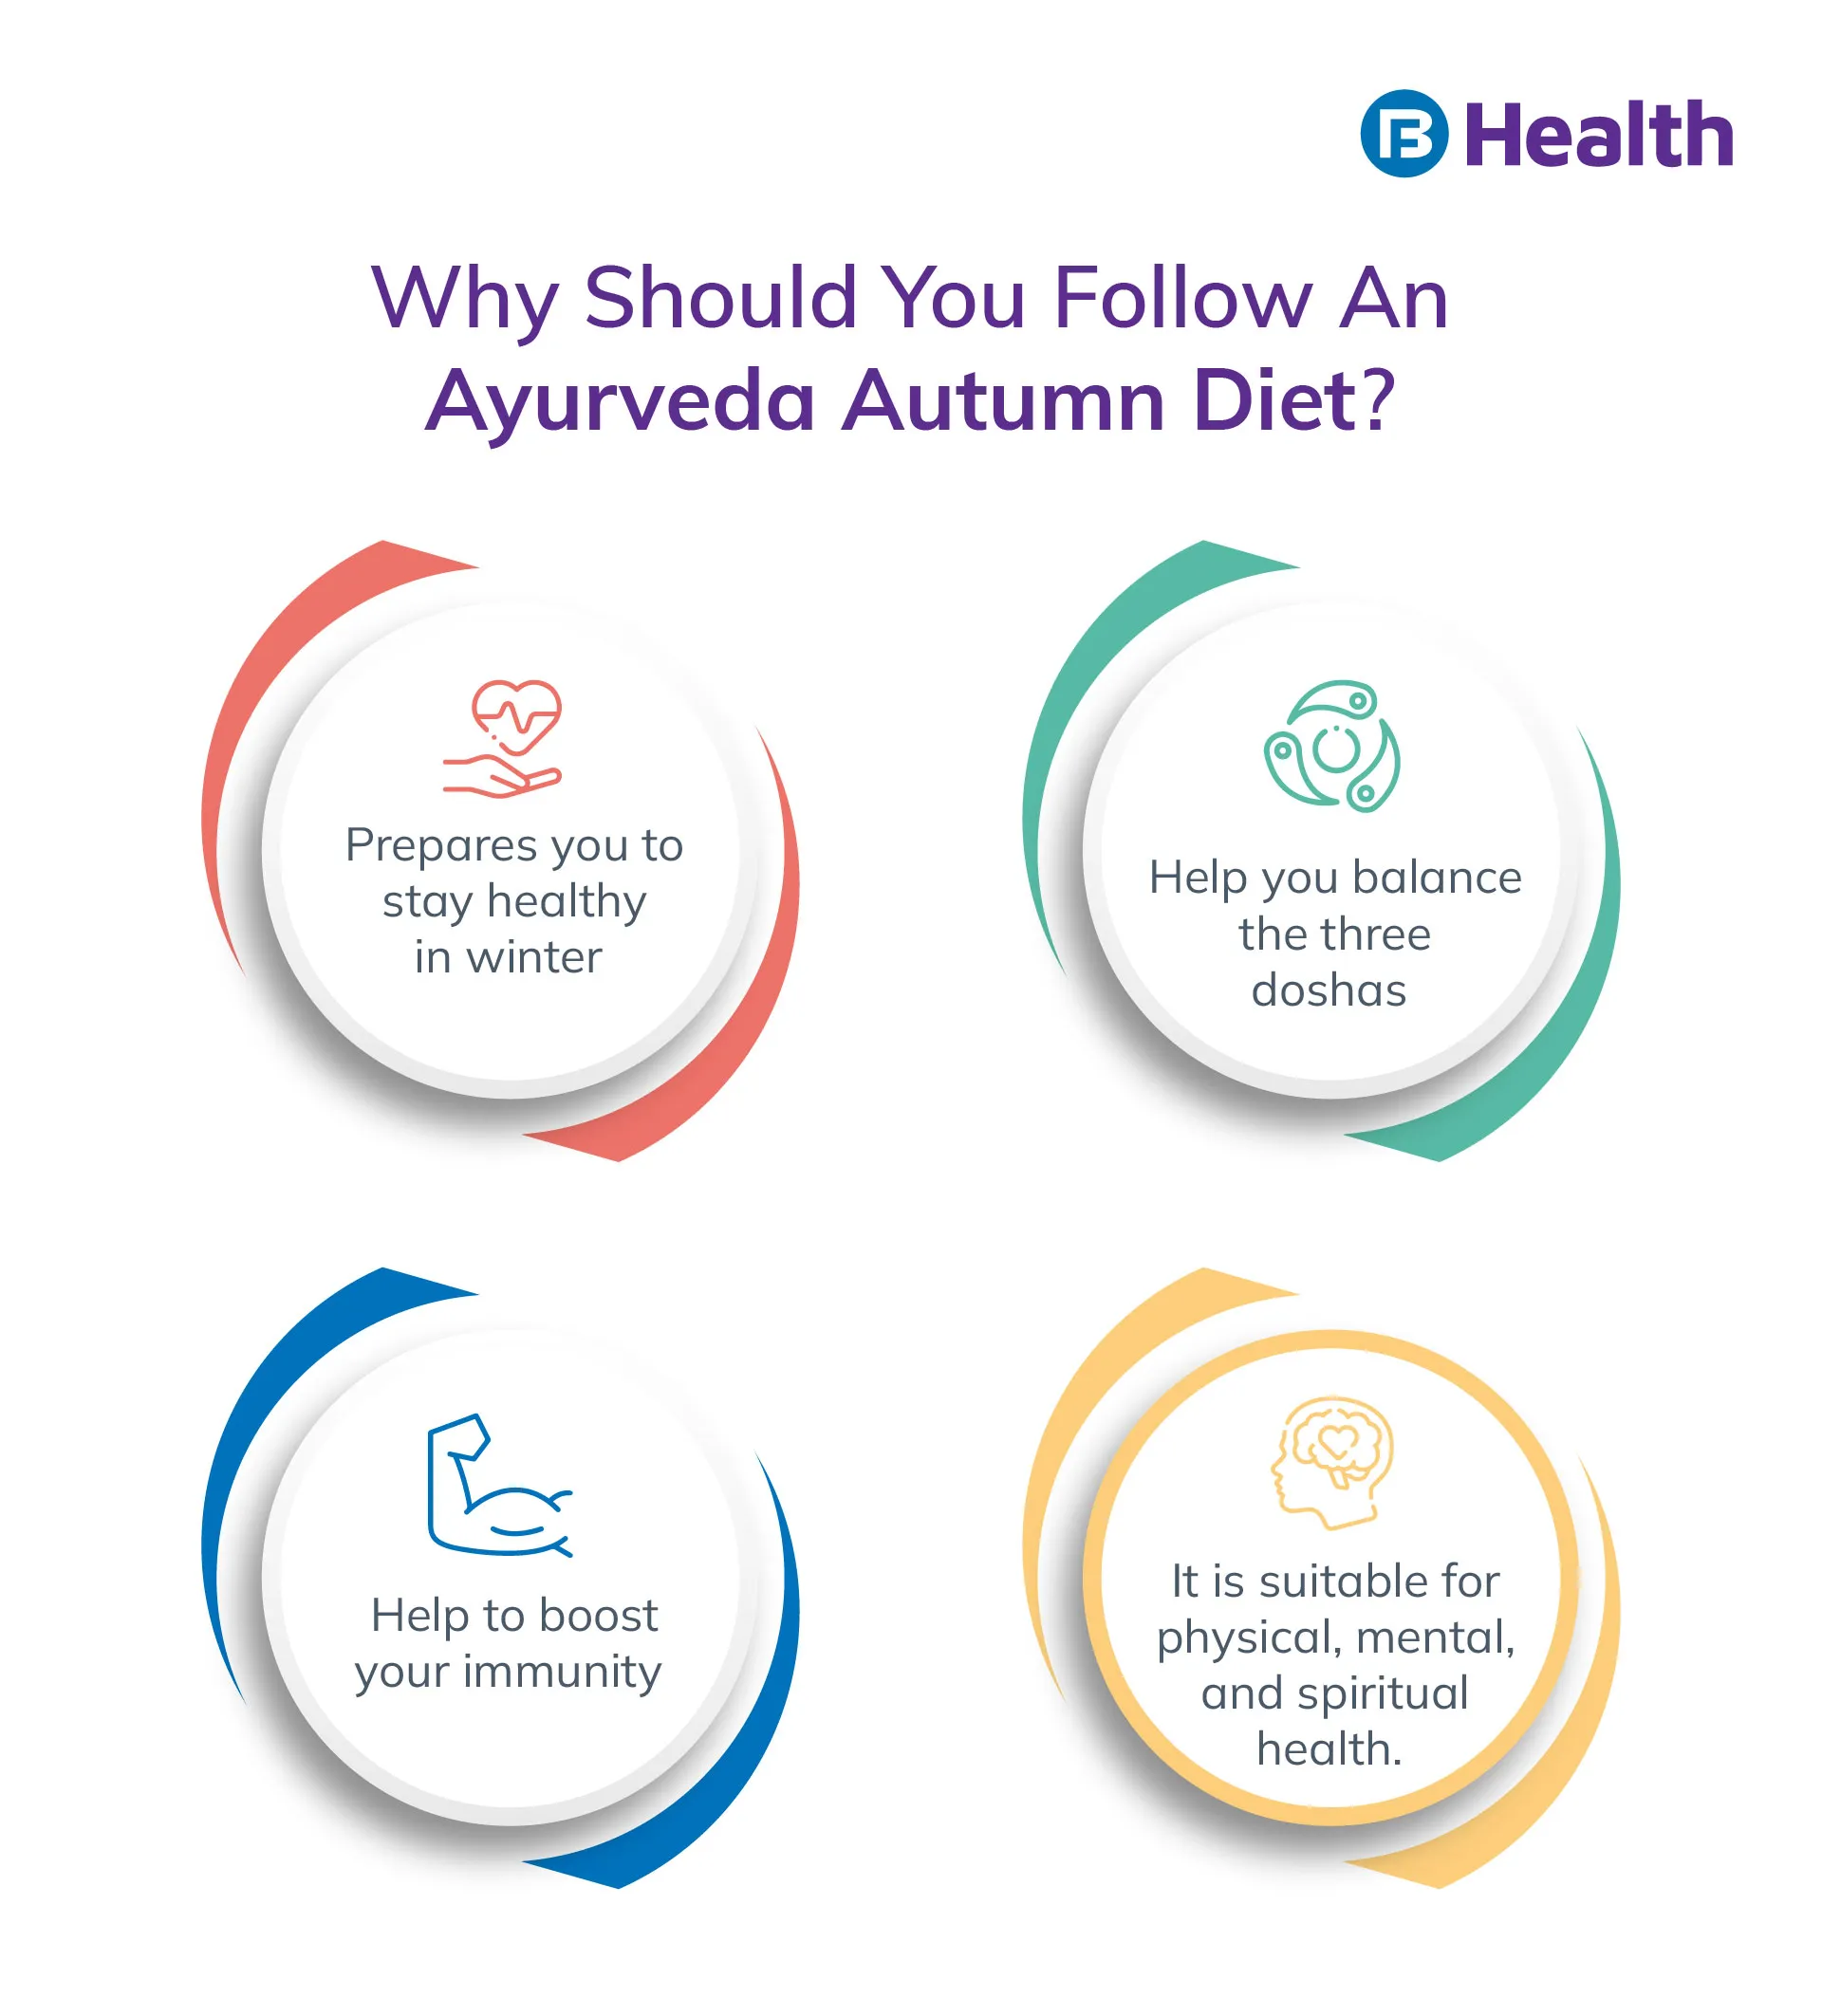 Ayurveda Autumn Diet